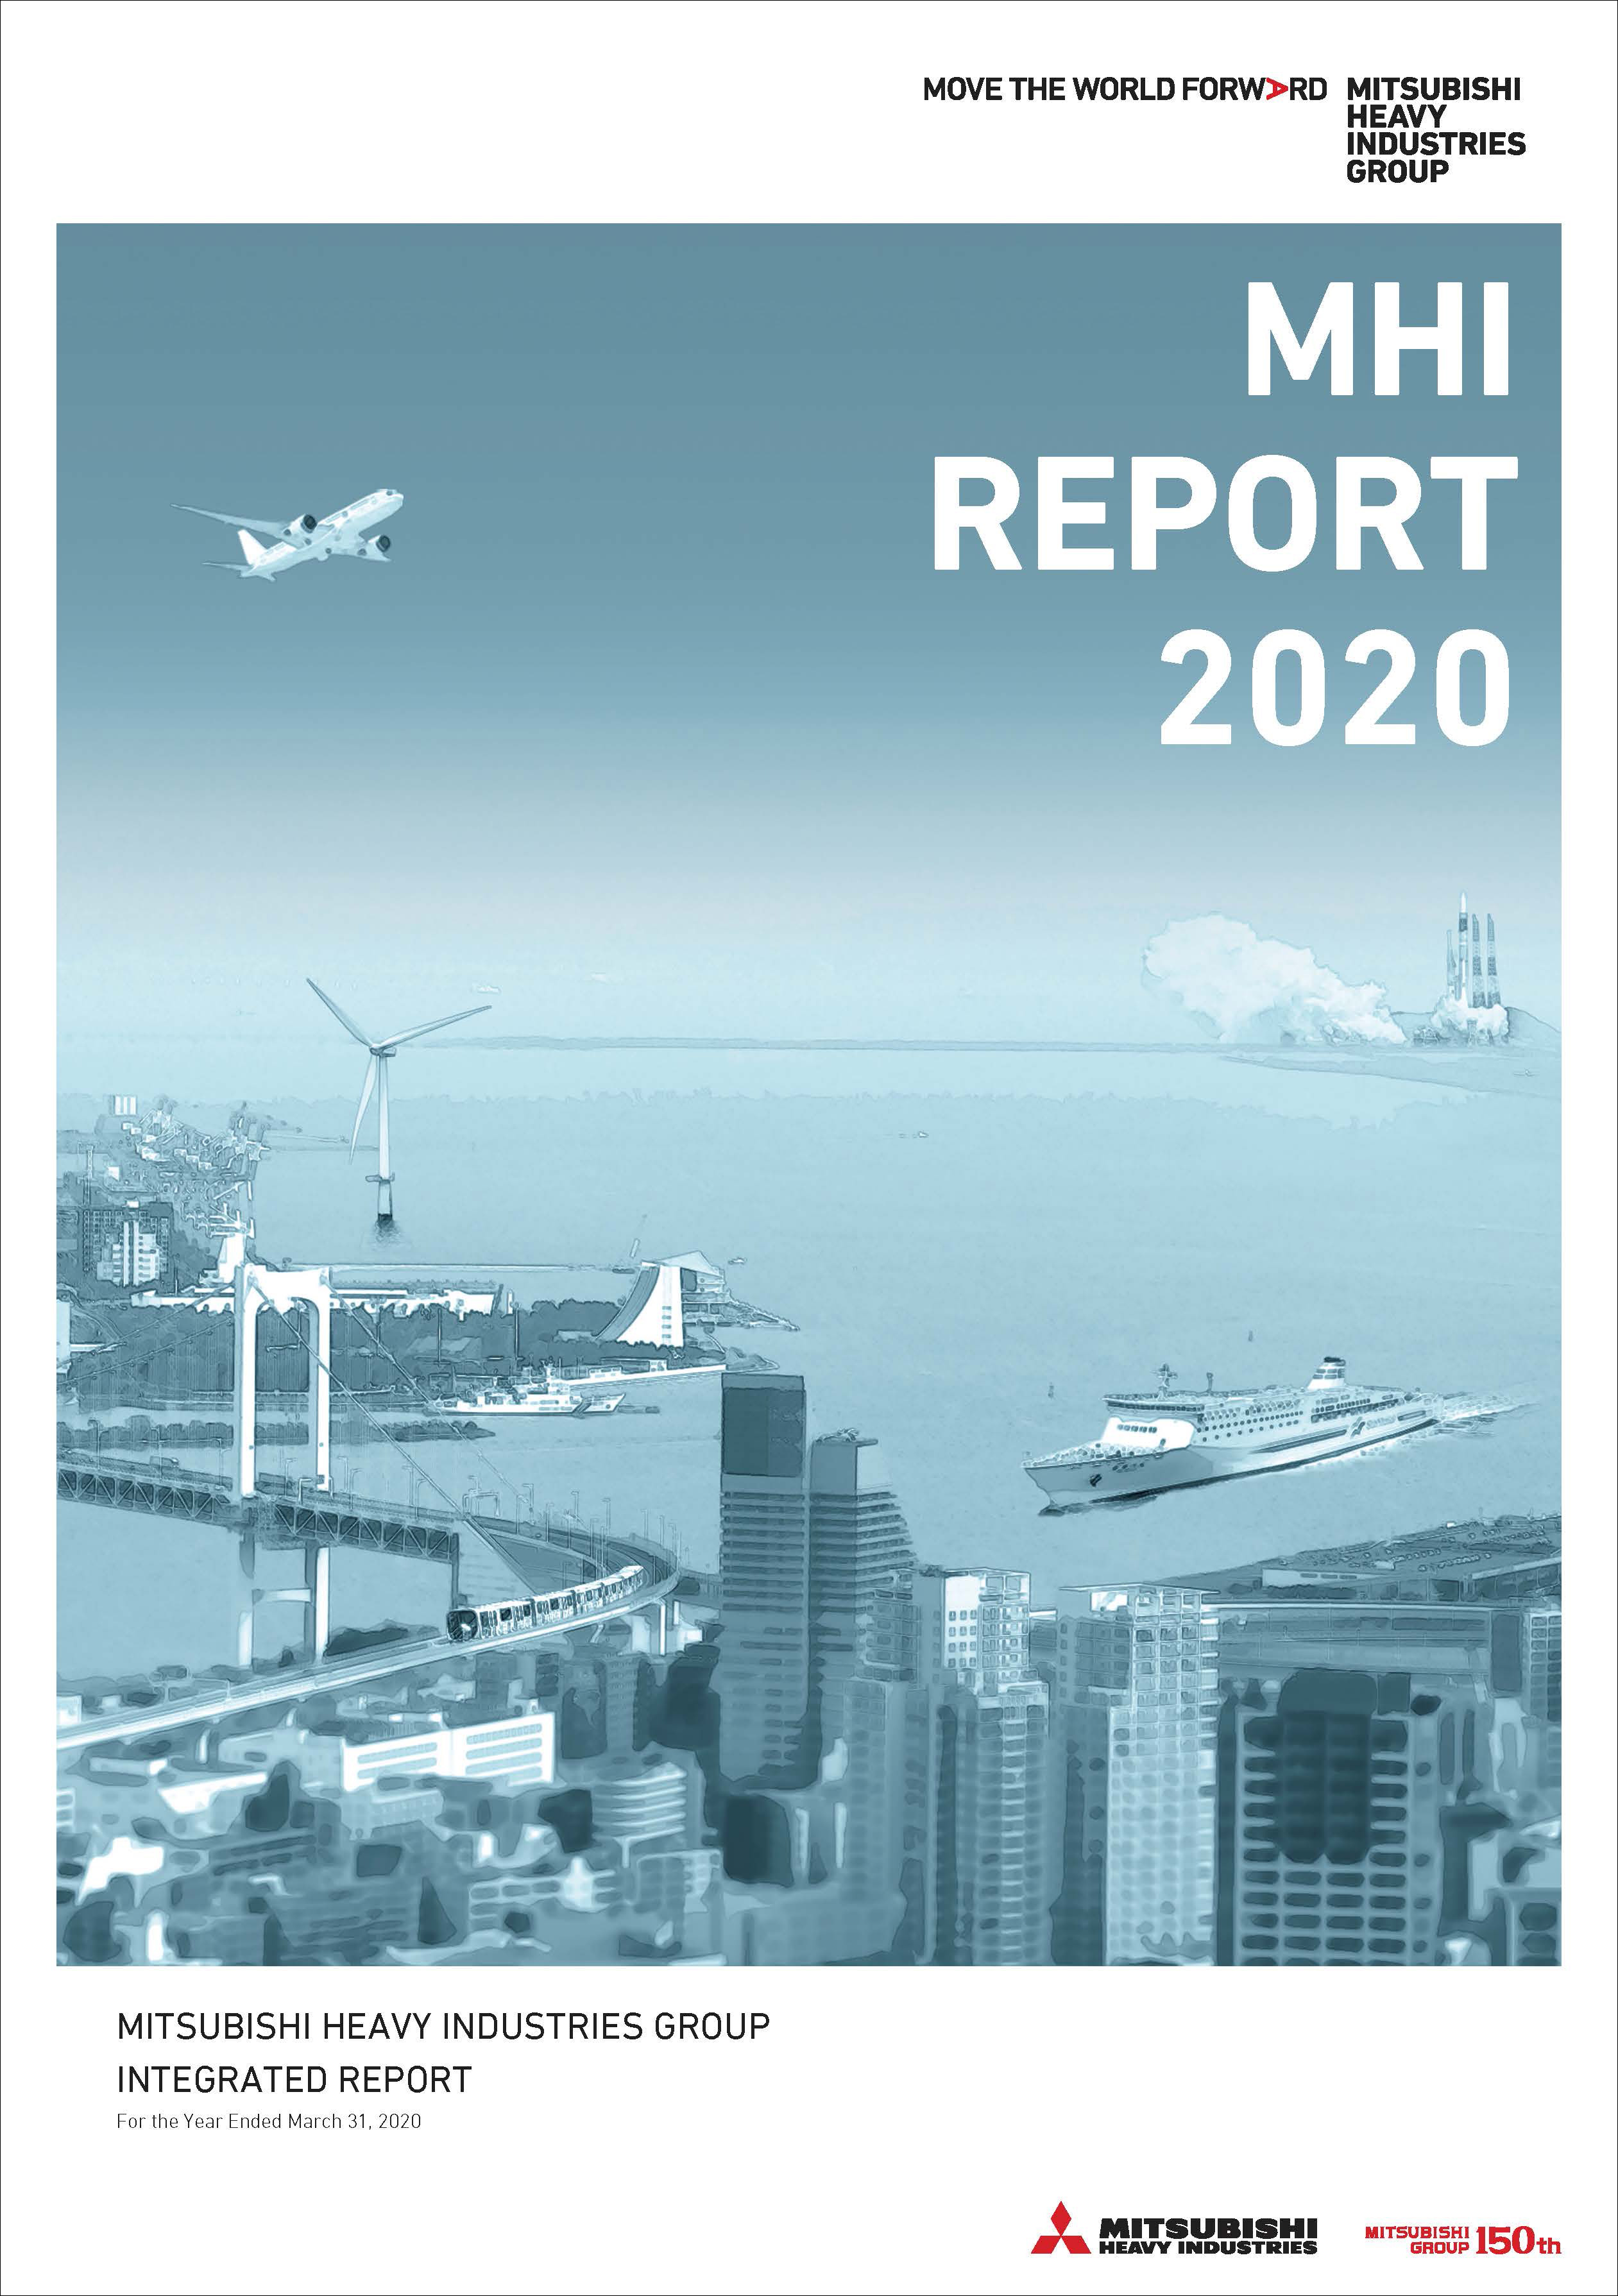 MHI REPORT 2020